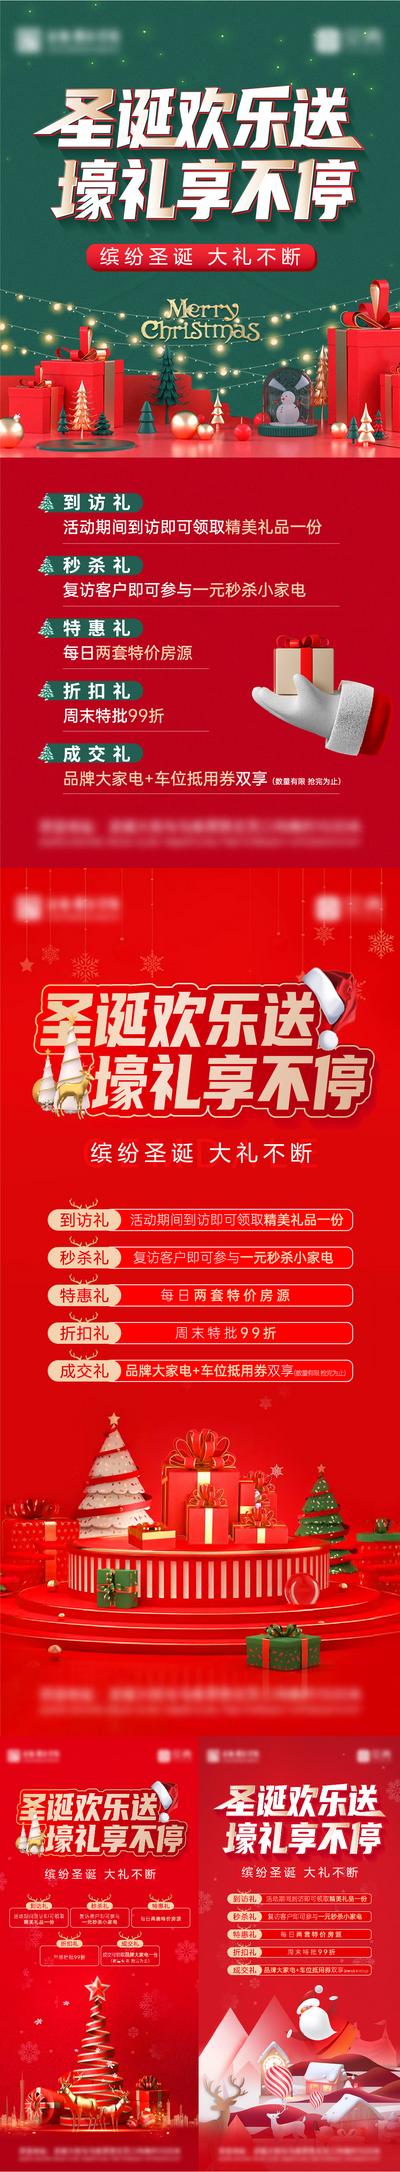 南门网 海报 地产 公历节日 圣诞节 五重礼 系列 暖场活动